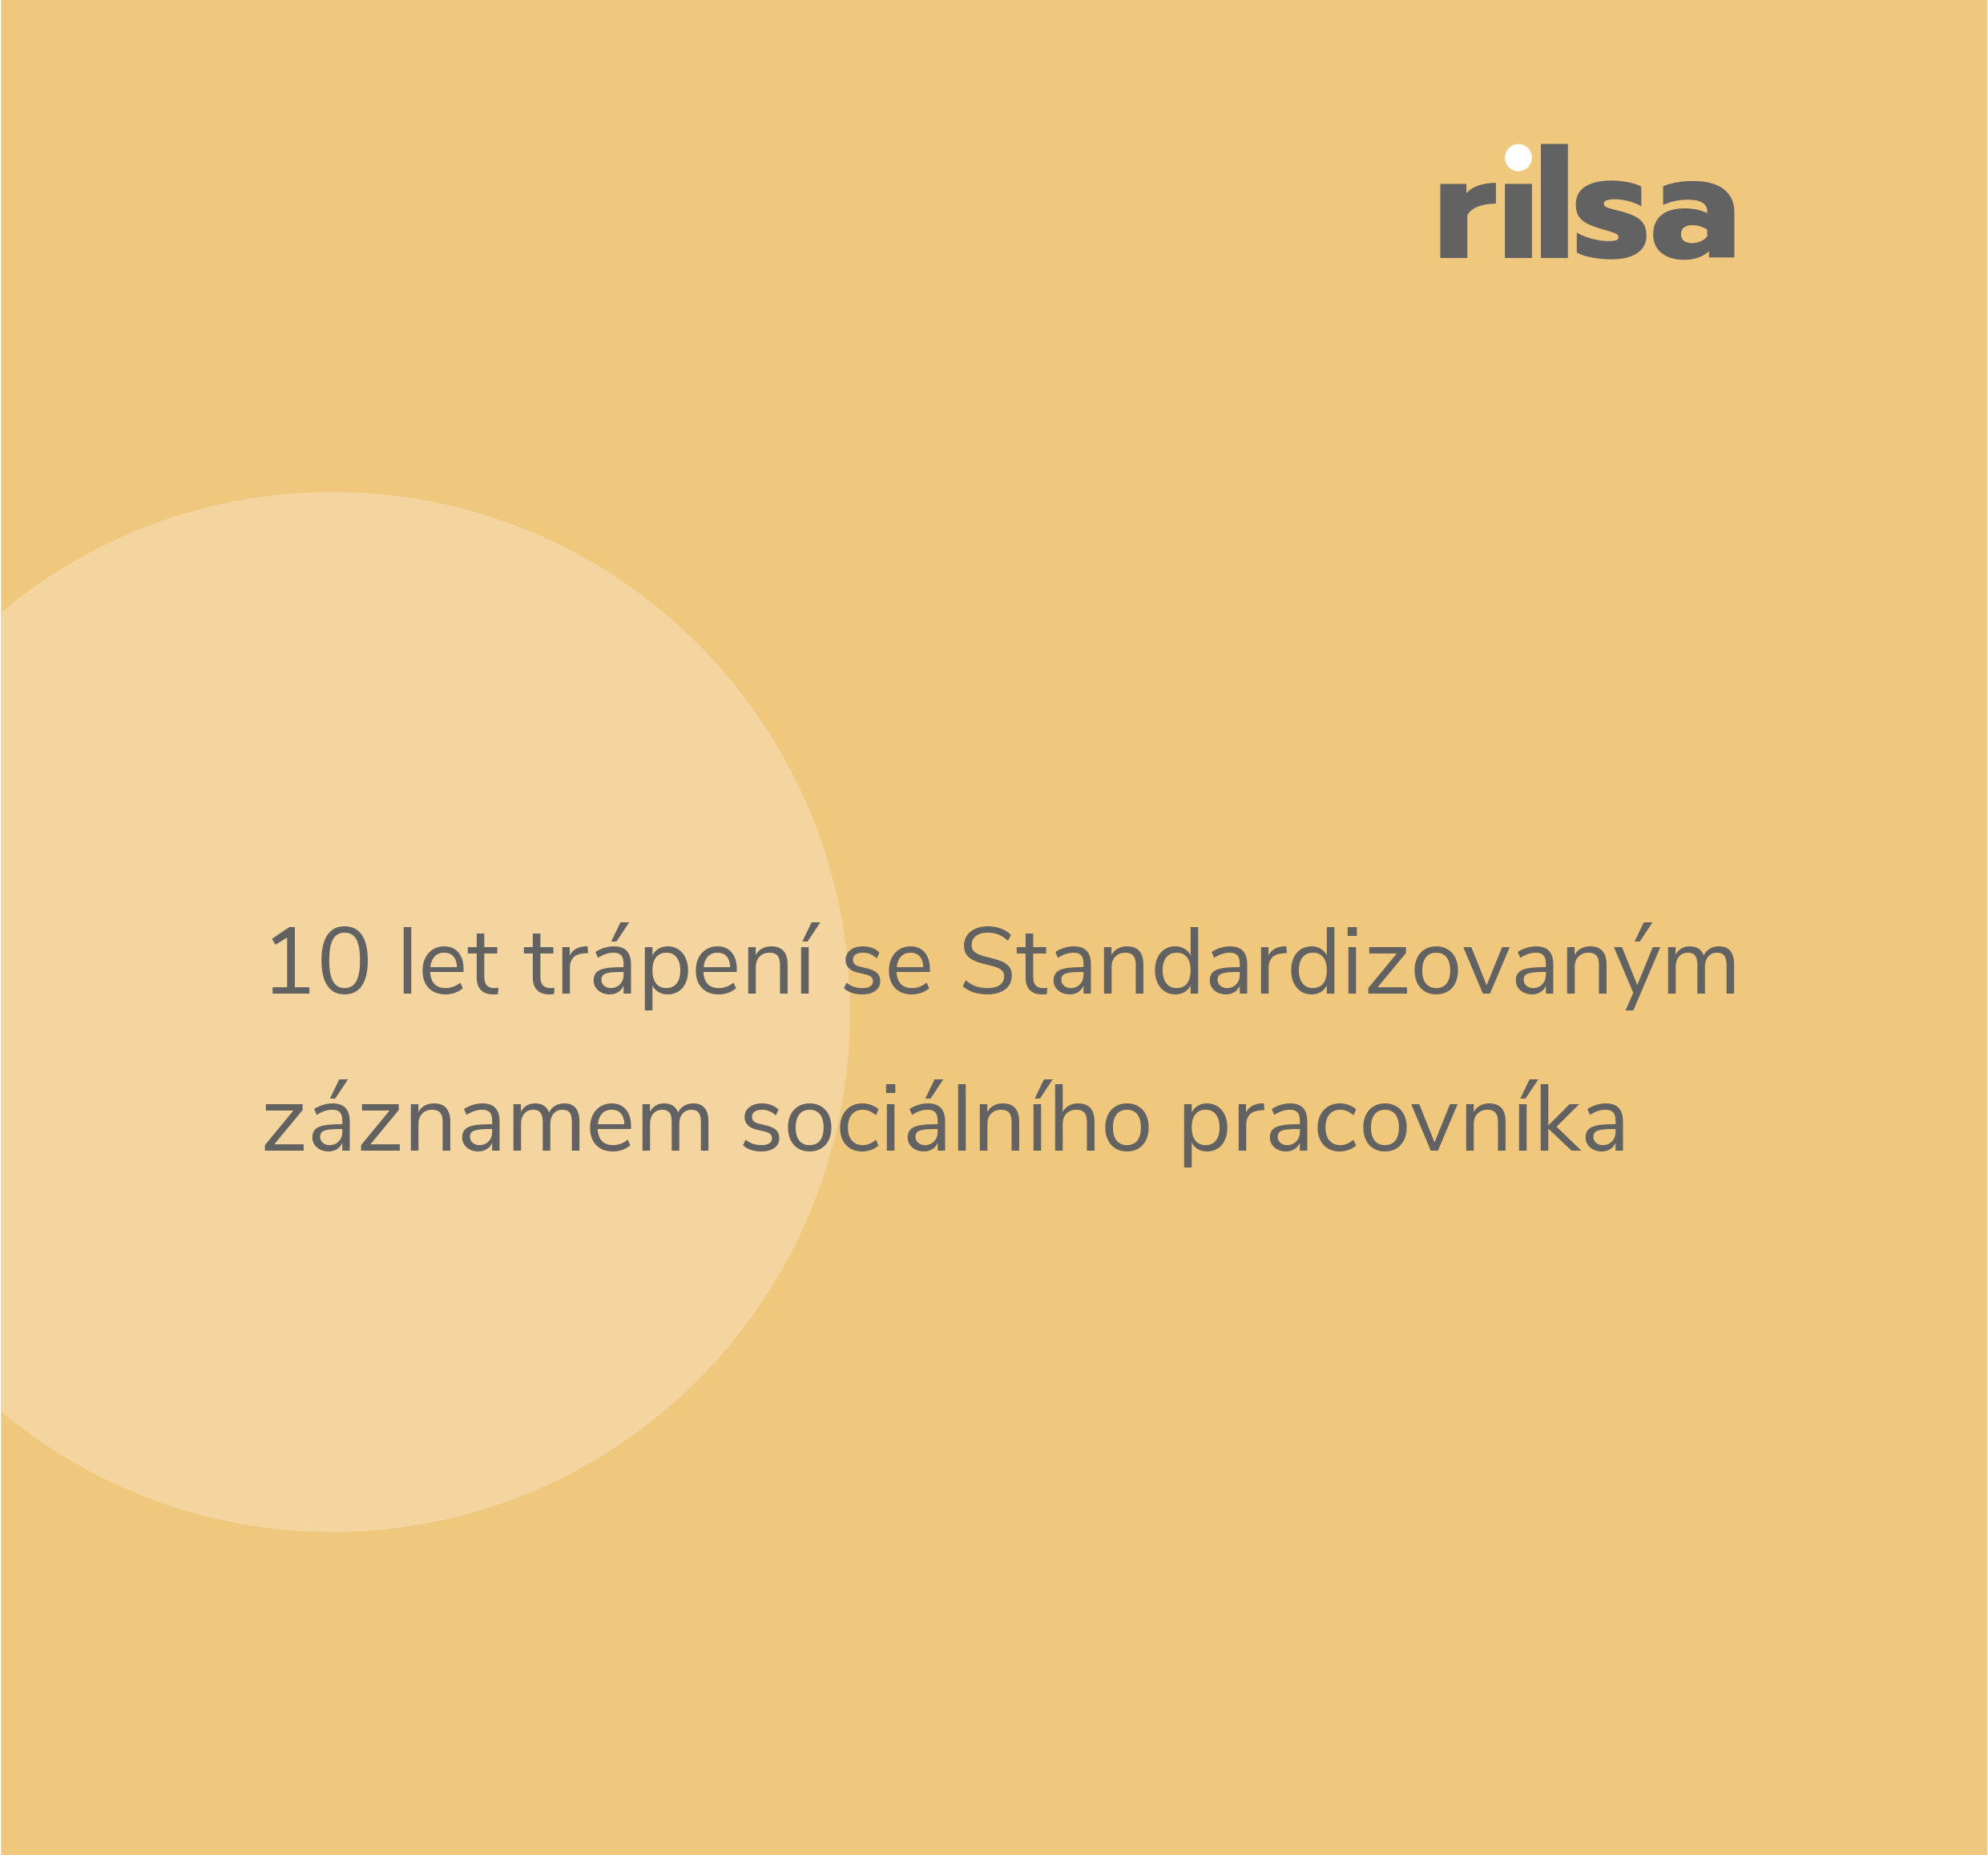 Nový policy brief z RILSA: o problémech s formulářem sociálních pracovníků SZSP